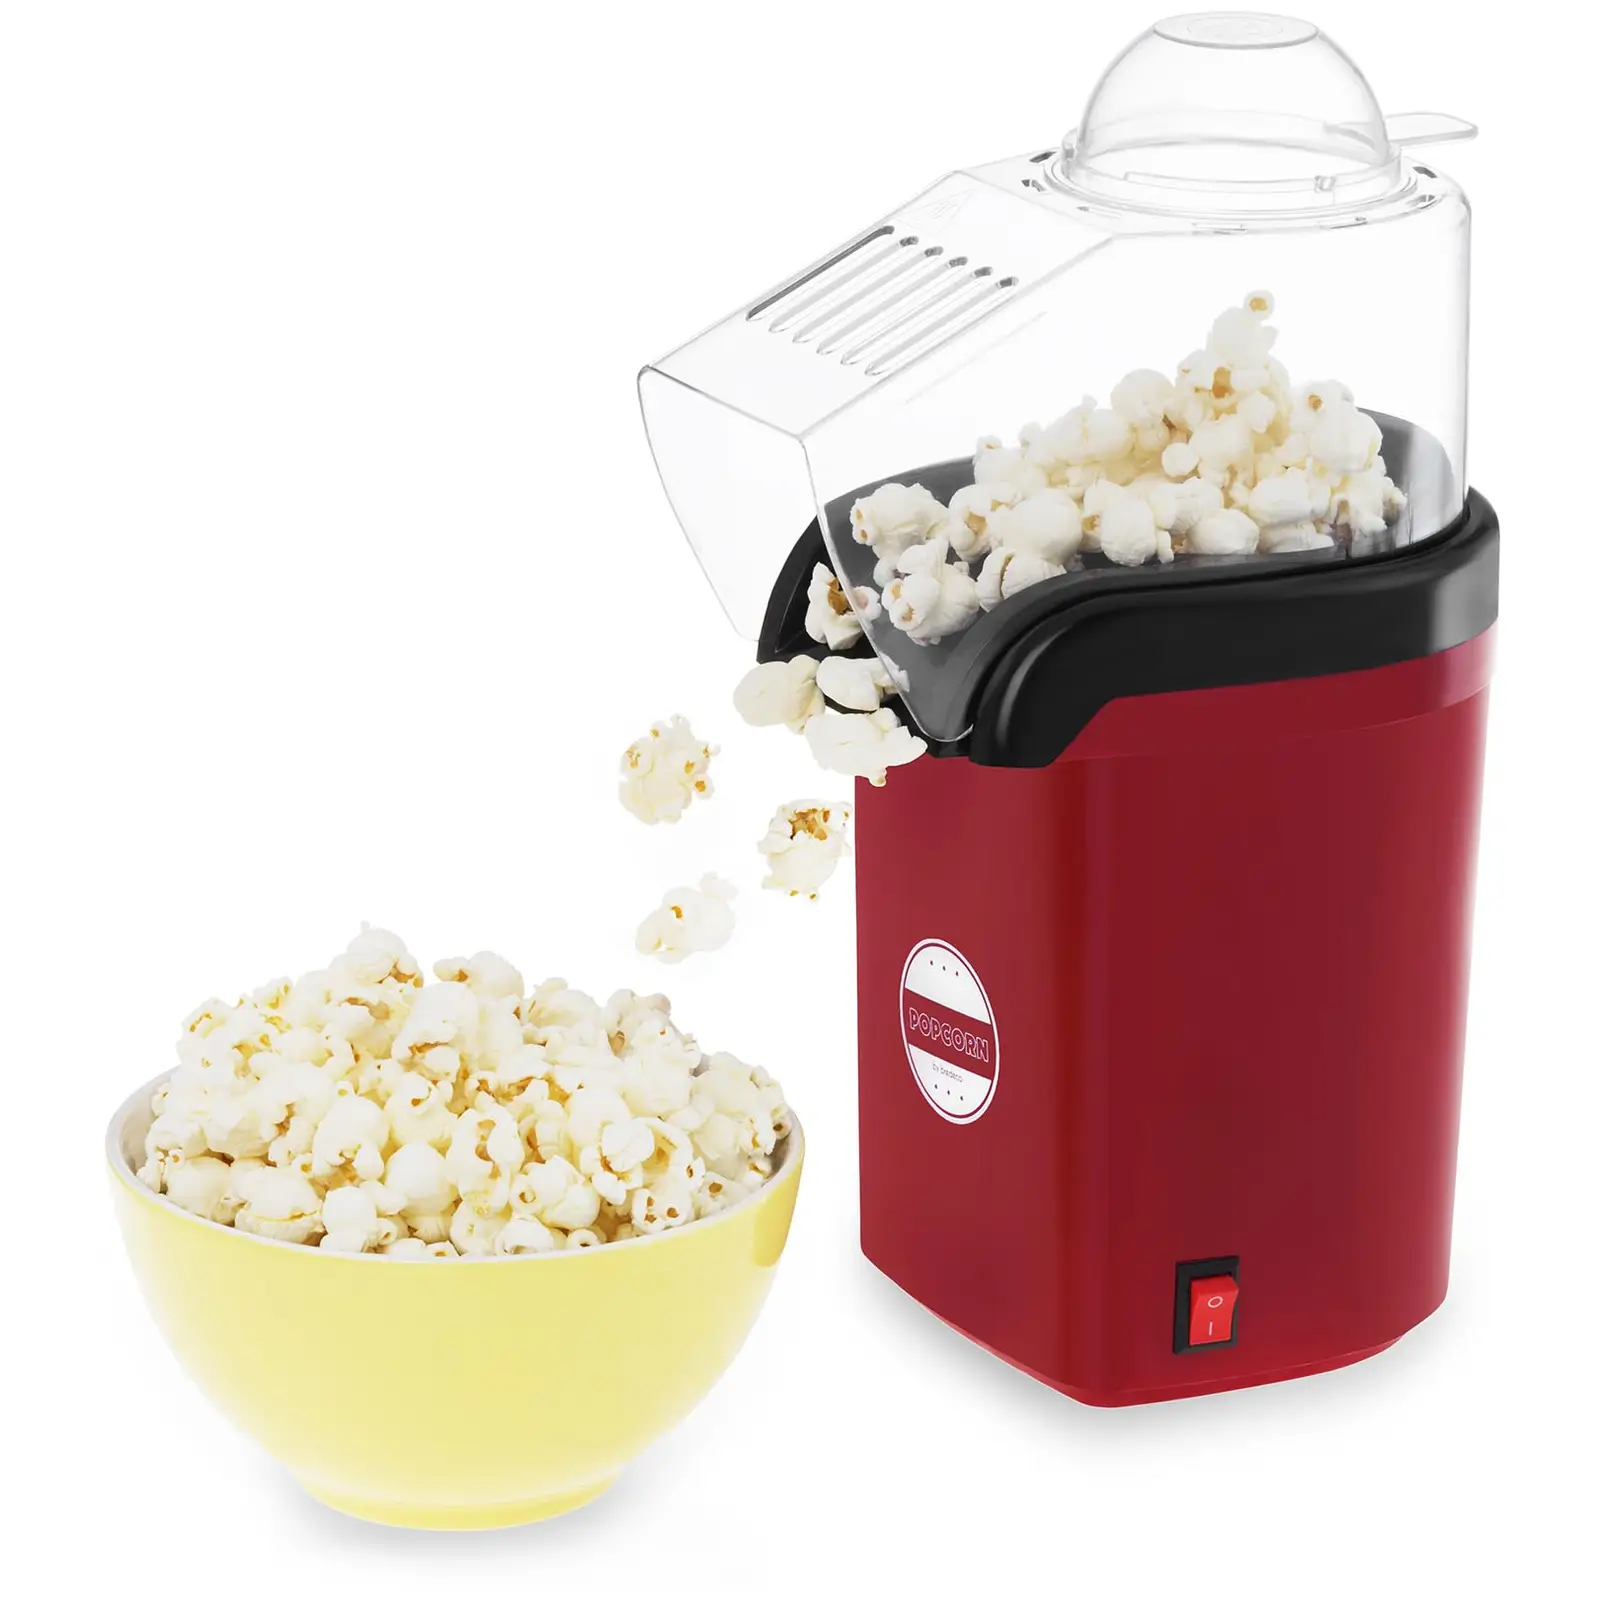 Popcorn készítő gép meleg levegős technológiával- piros